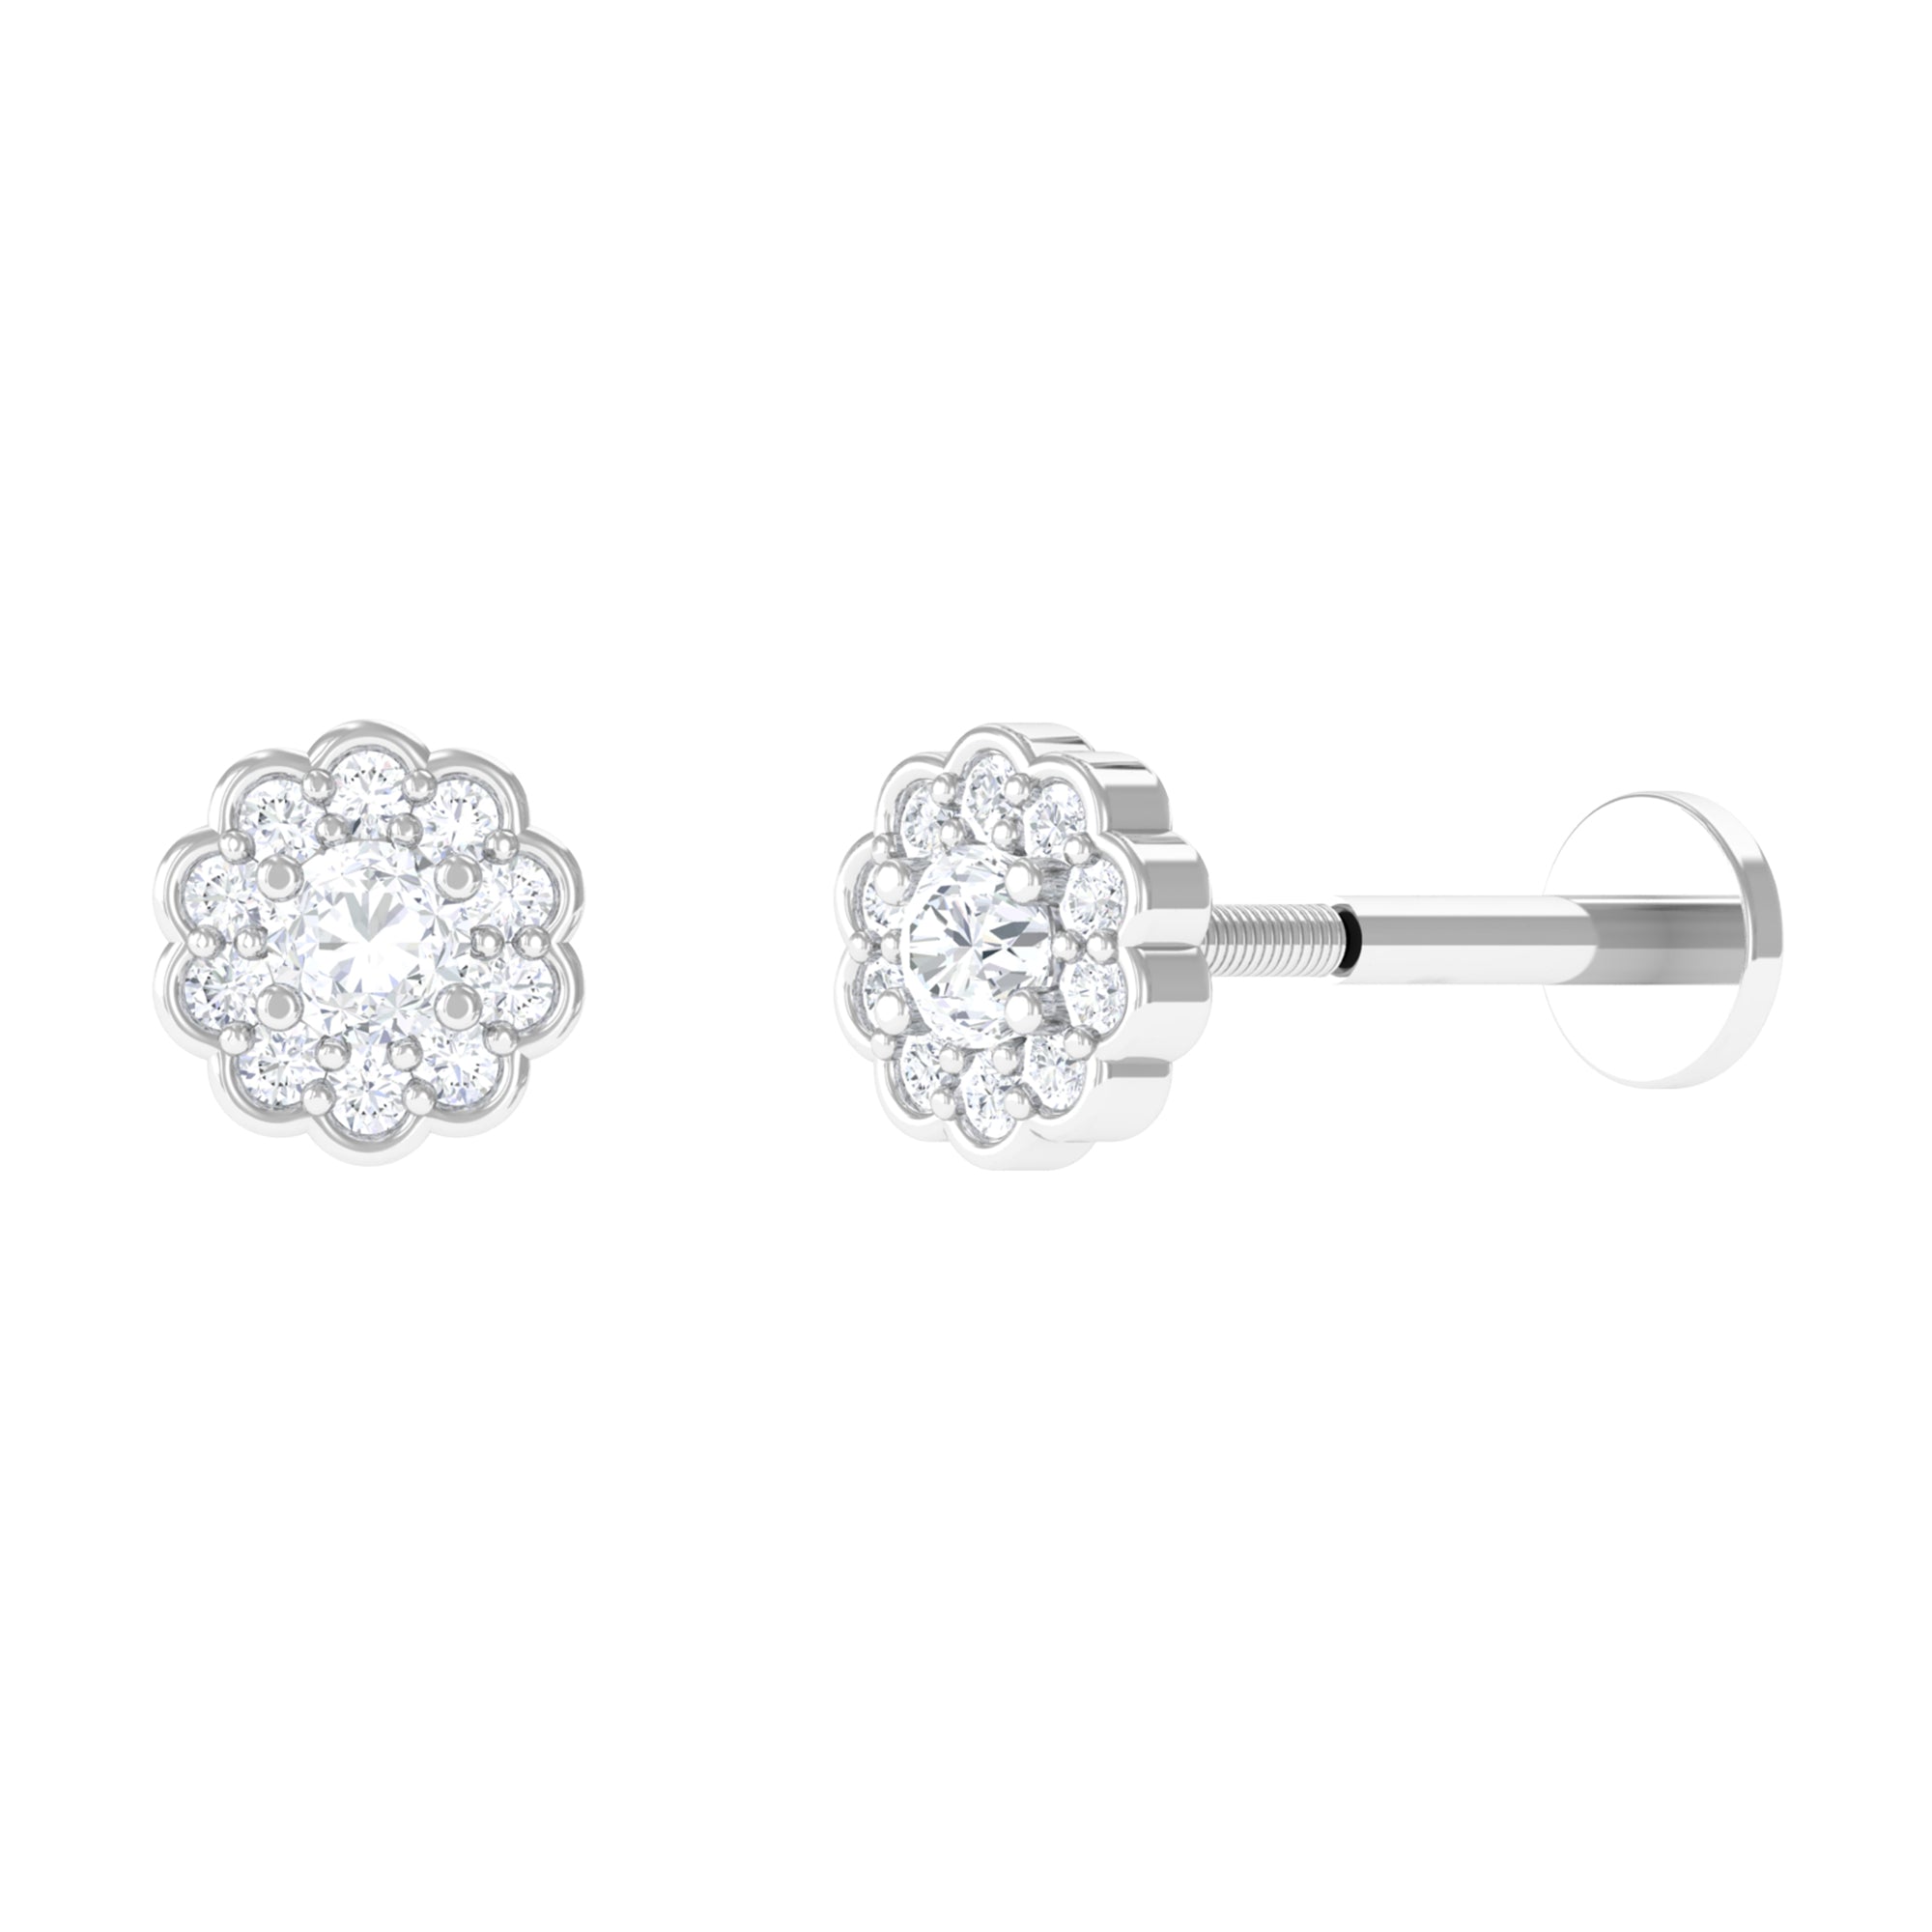 Sparkanite Jewels-Certified Moissanite Flower Inspired Earring for Helix Piercing